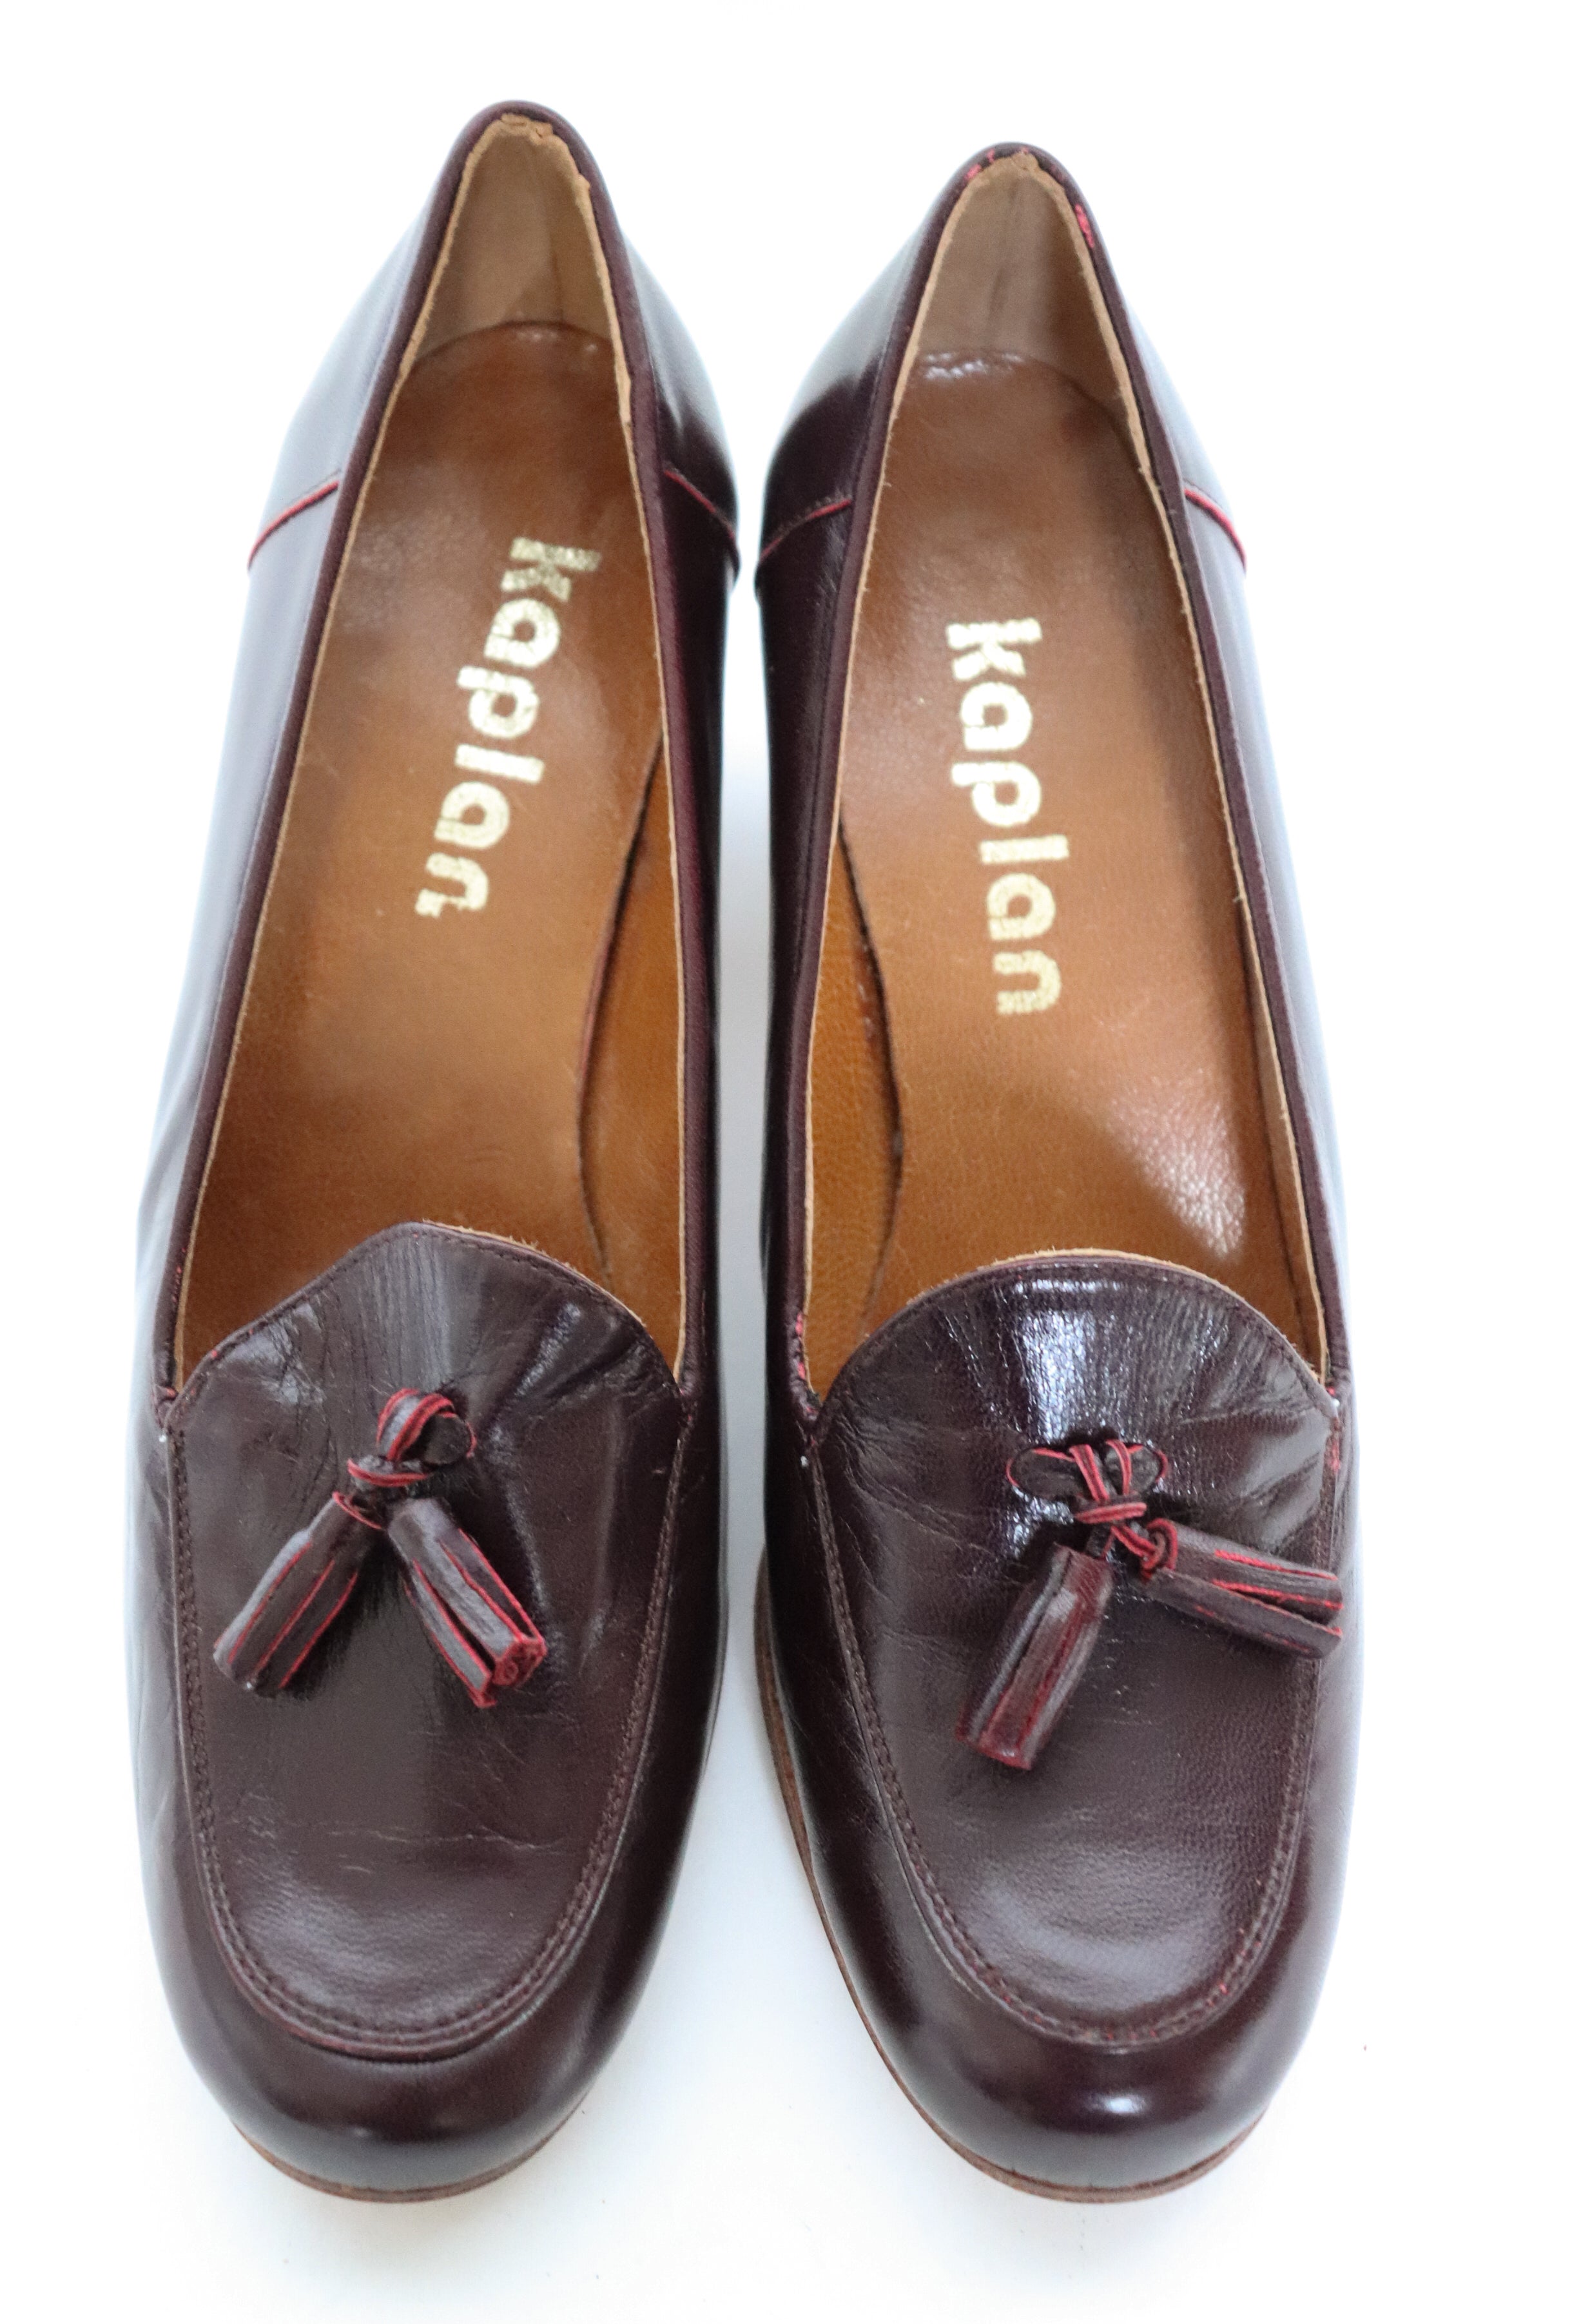 Heel Tassel Loafers - Vintage - Burgundy Leather - Kaplan - UK 3 / 36 - Unworn